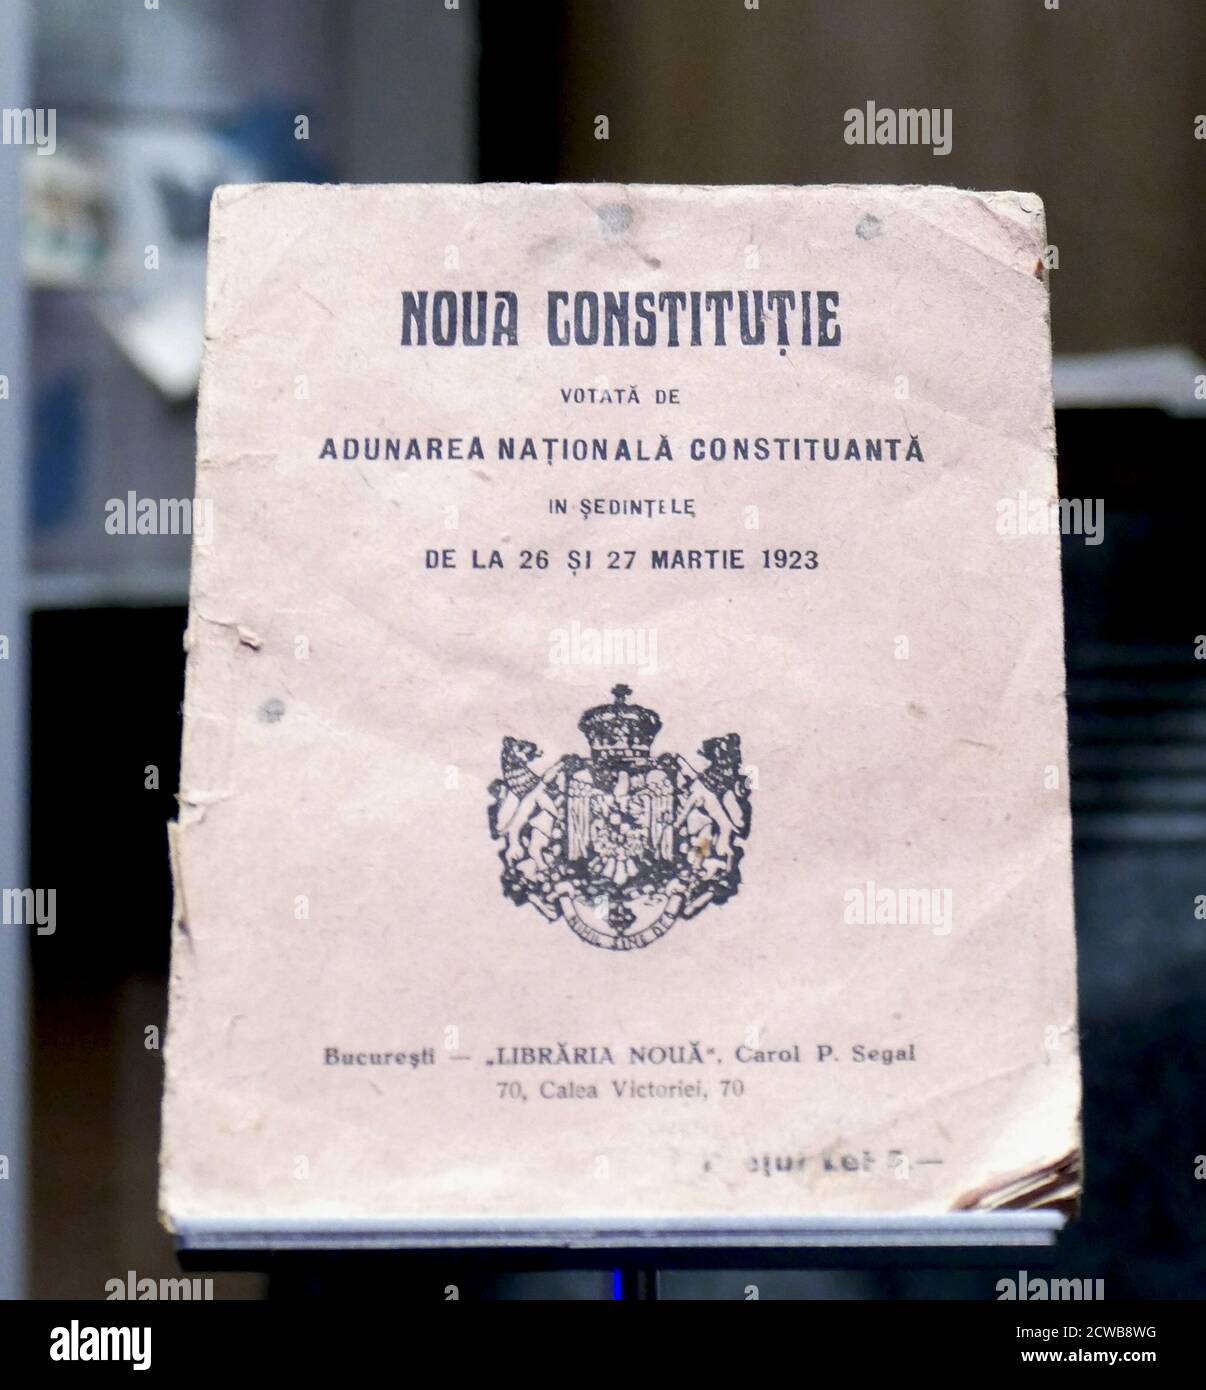 Die Verfassung Rumäniens von 1923, auch Verfassung der Union genannt, sollte die Organisation des Staates auf der Grundlage des allgemeinen männlichen Wahlrechts und der neuen Realitäten, die nach der Großen Union von 1918 entstanden, ausrichten. Stockfoto